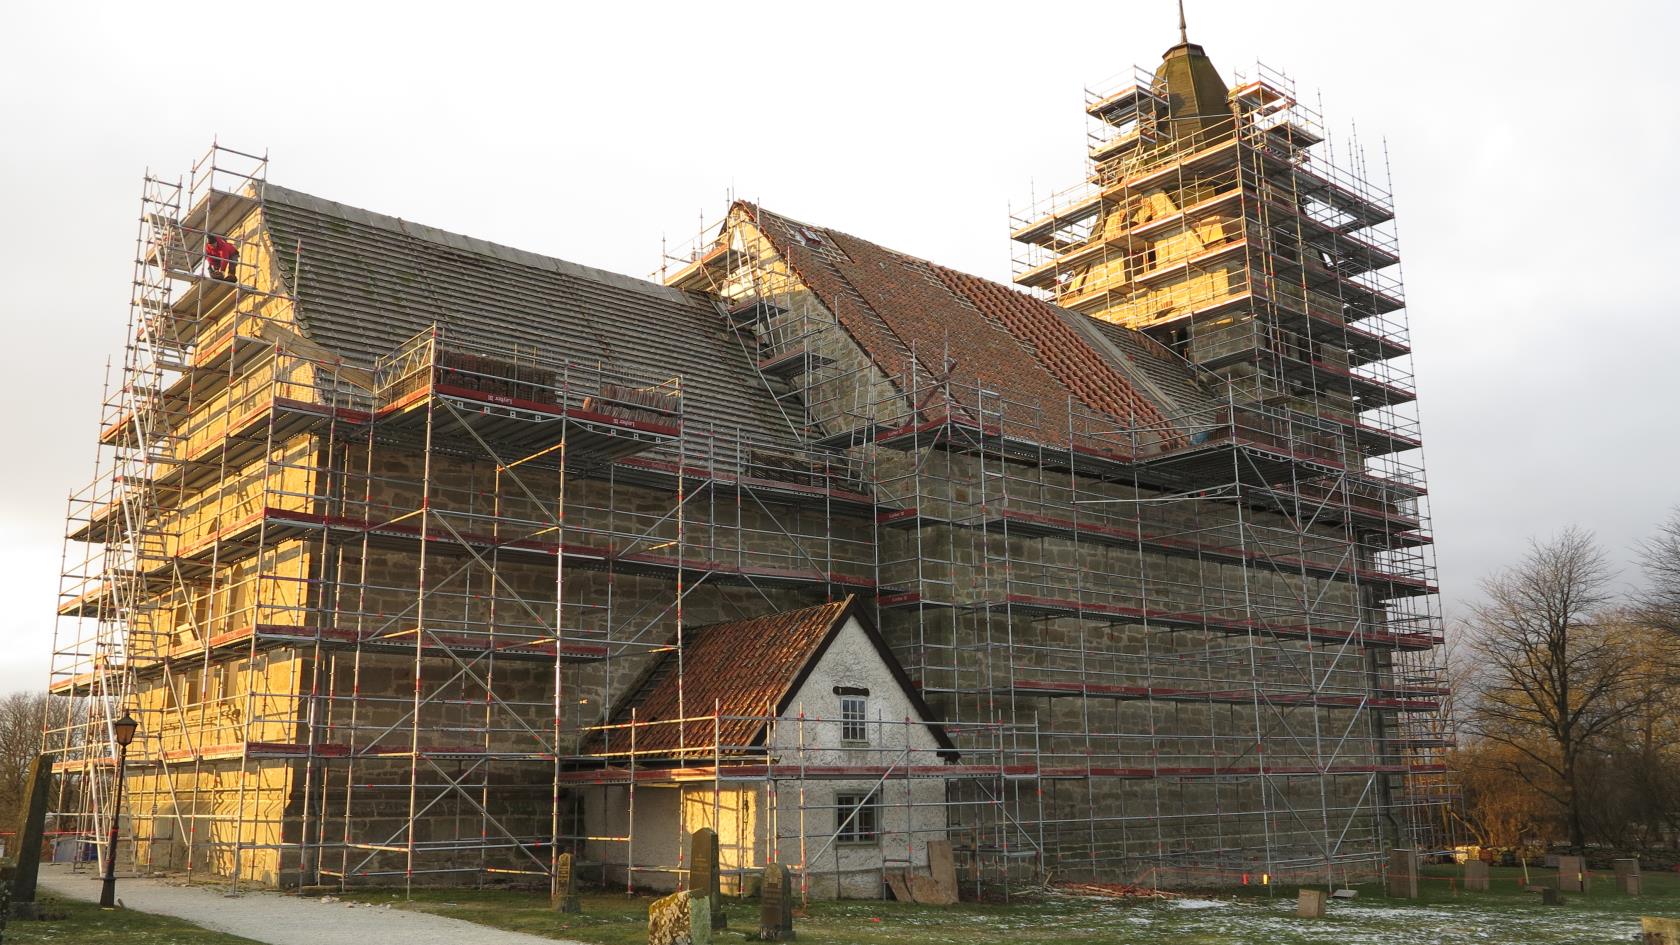 Grötlingbo kyrka under restaurering år 2017